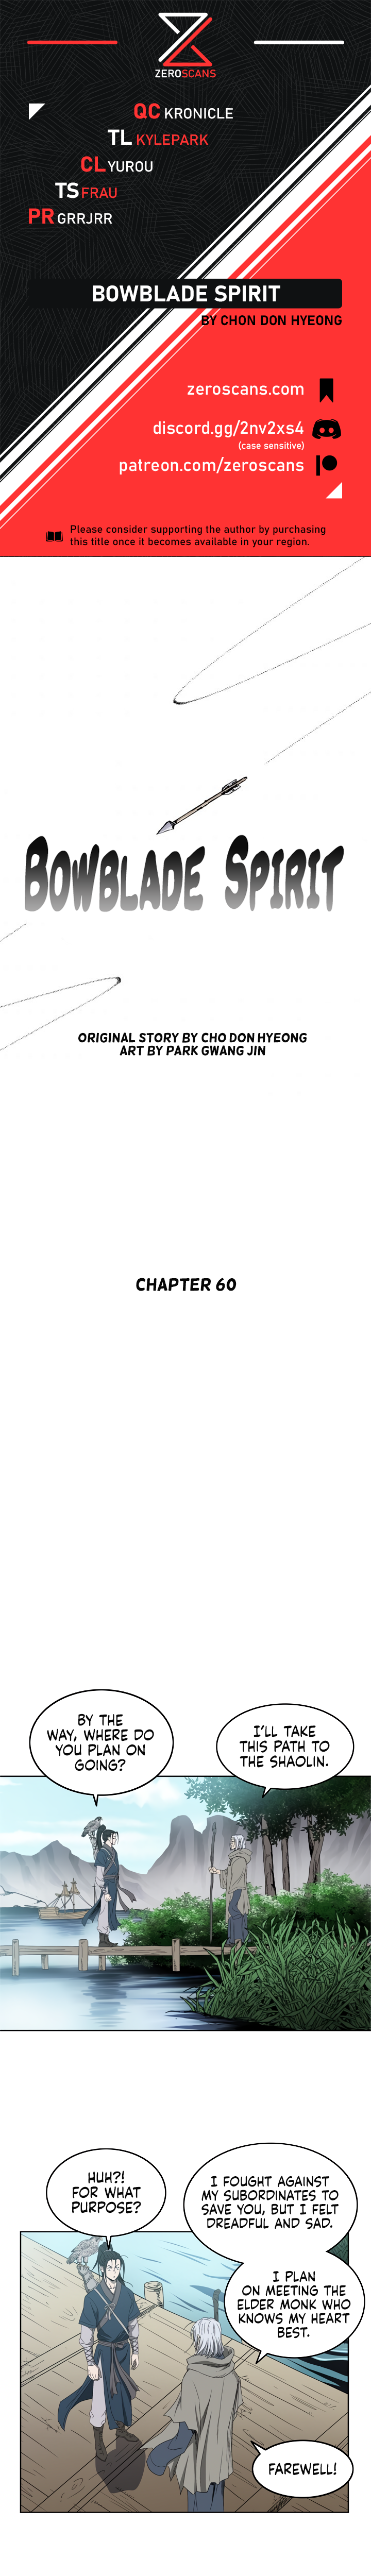 Bowblade Spirit - Chapter 5508 - Image 1